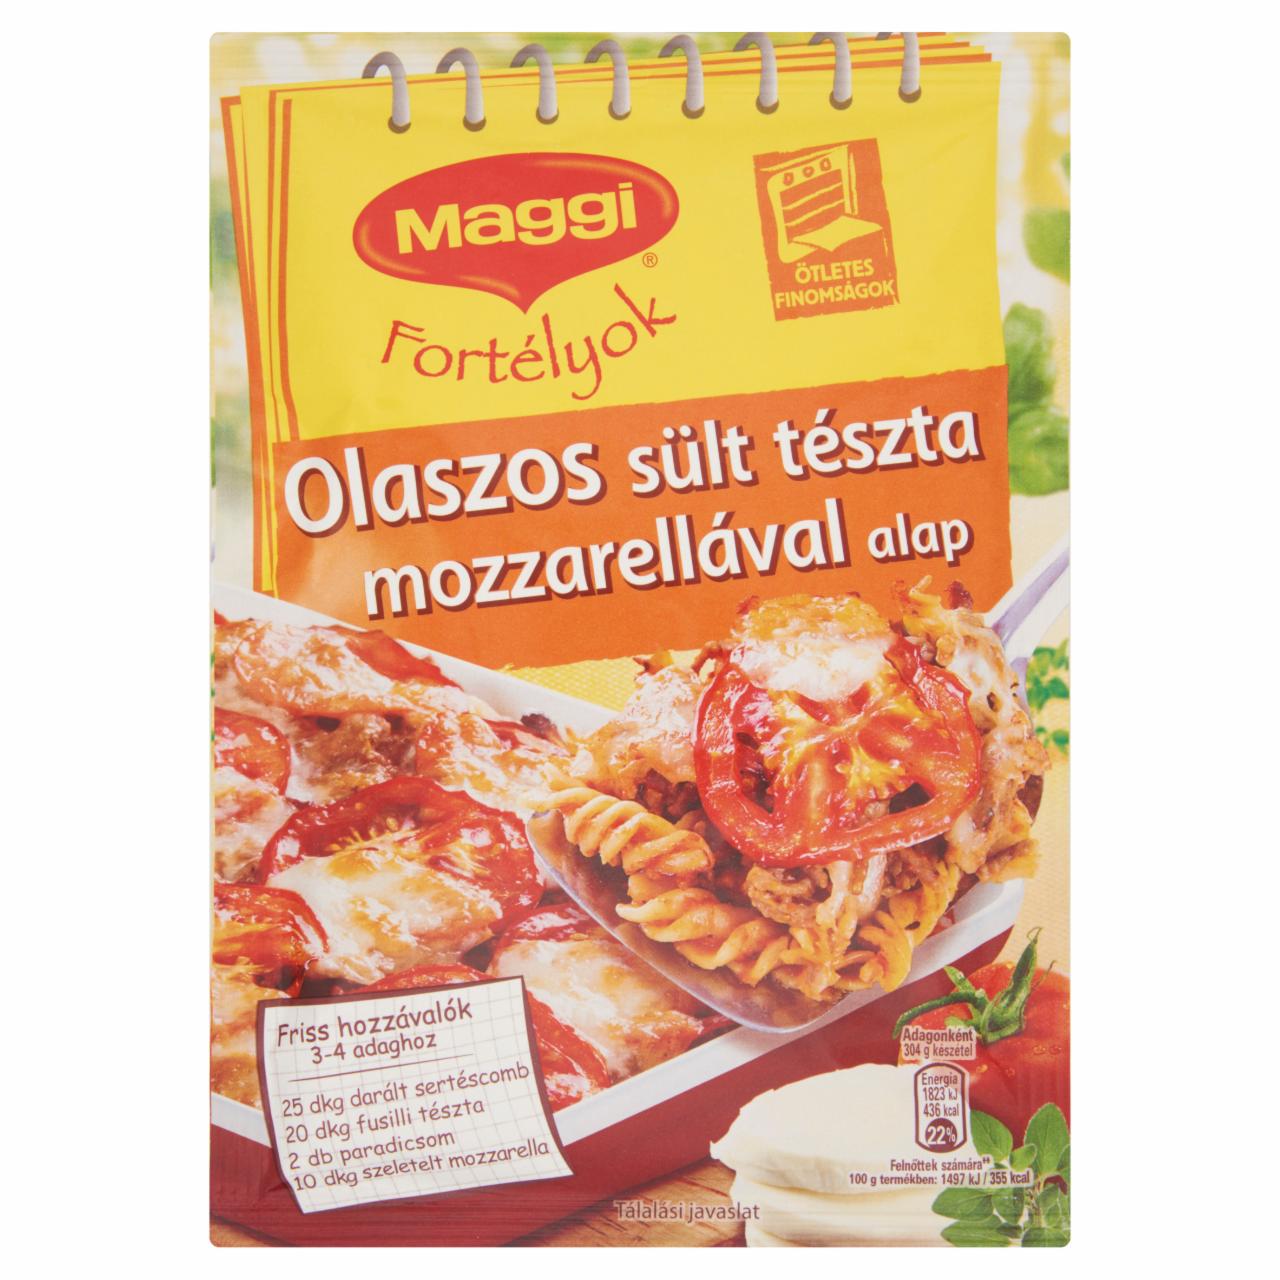 Képek - Maggi Fortélyok Olaszos sült tészta mozzarellával alap 40 g